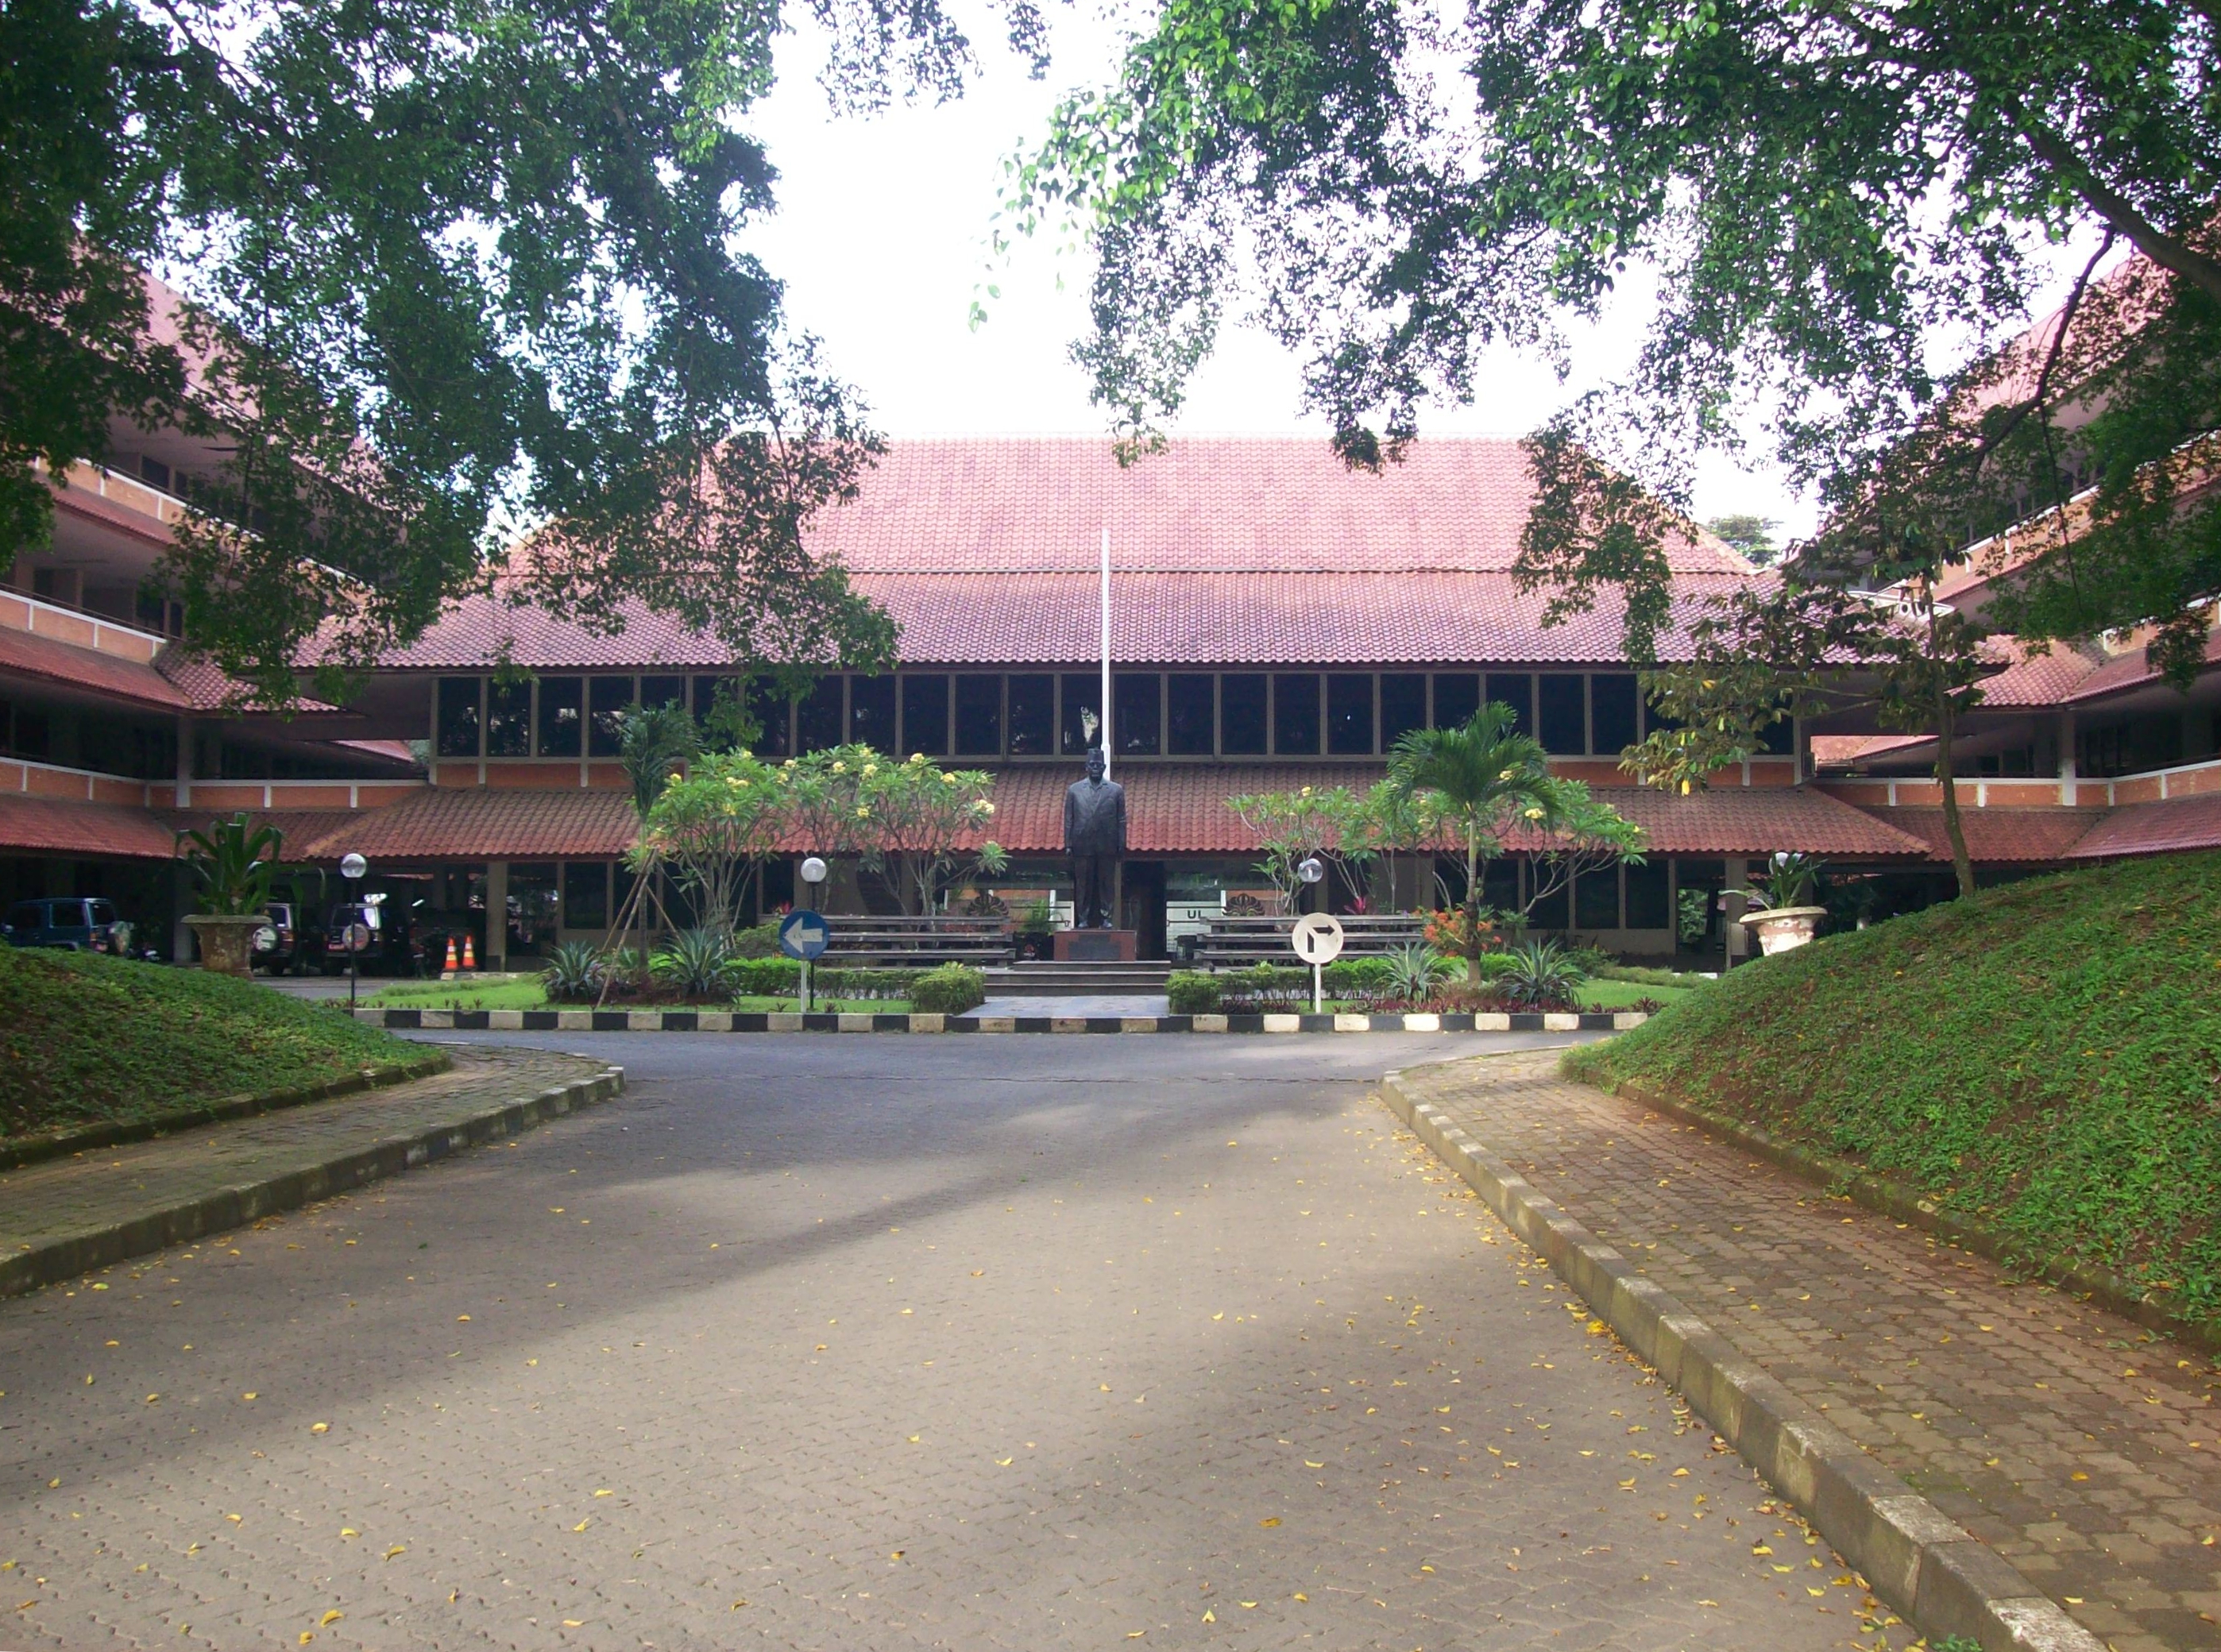 Tahun 2012 Fakultas Hukum Universitas Indonesia “FH UI” masih dinobatkan Penulis sebagai fakultas hukum terbaik seantero nusantara